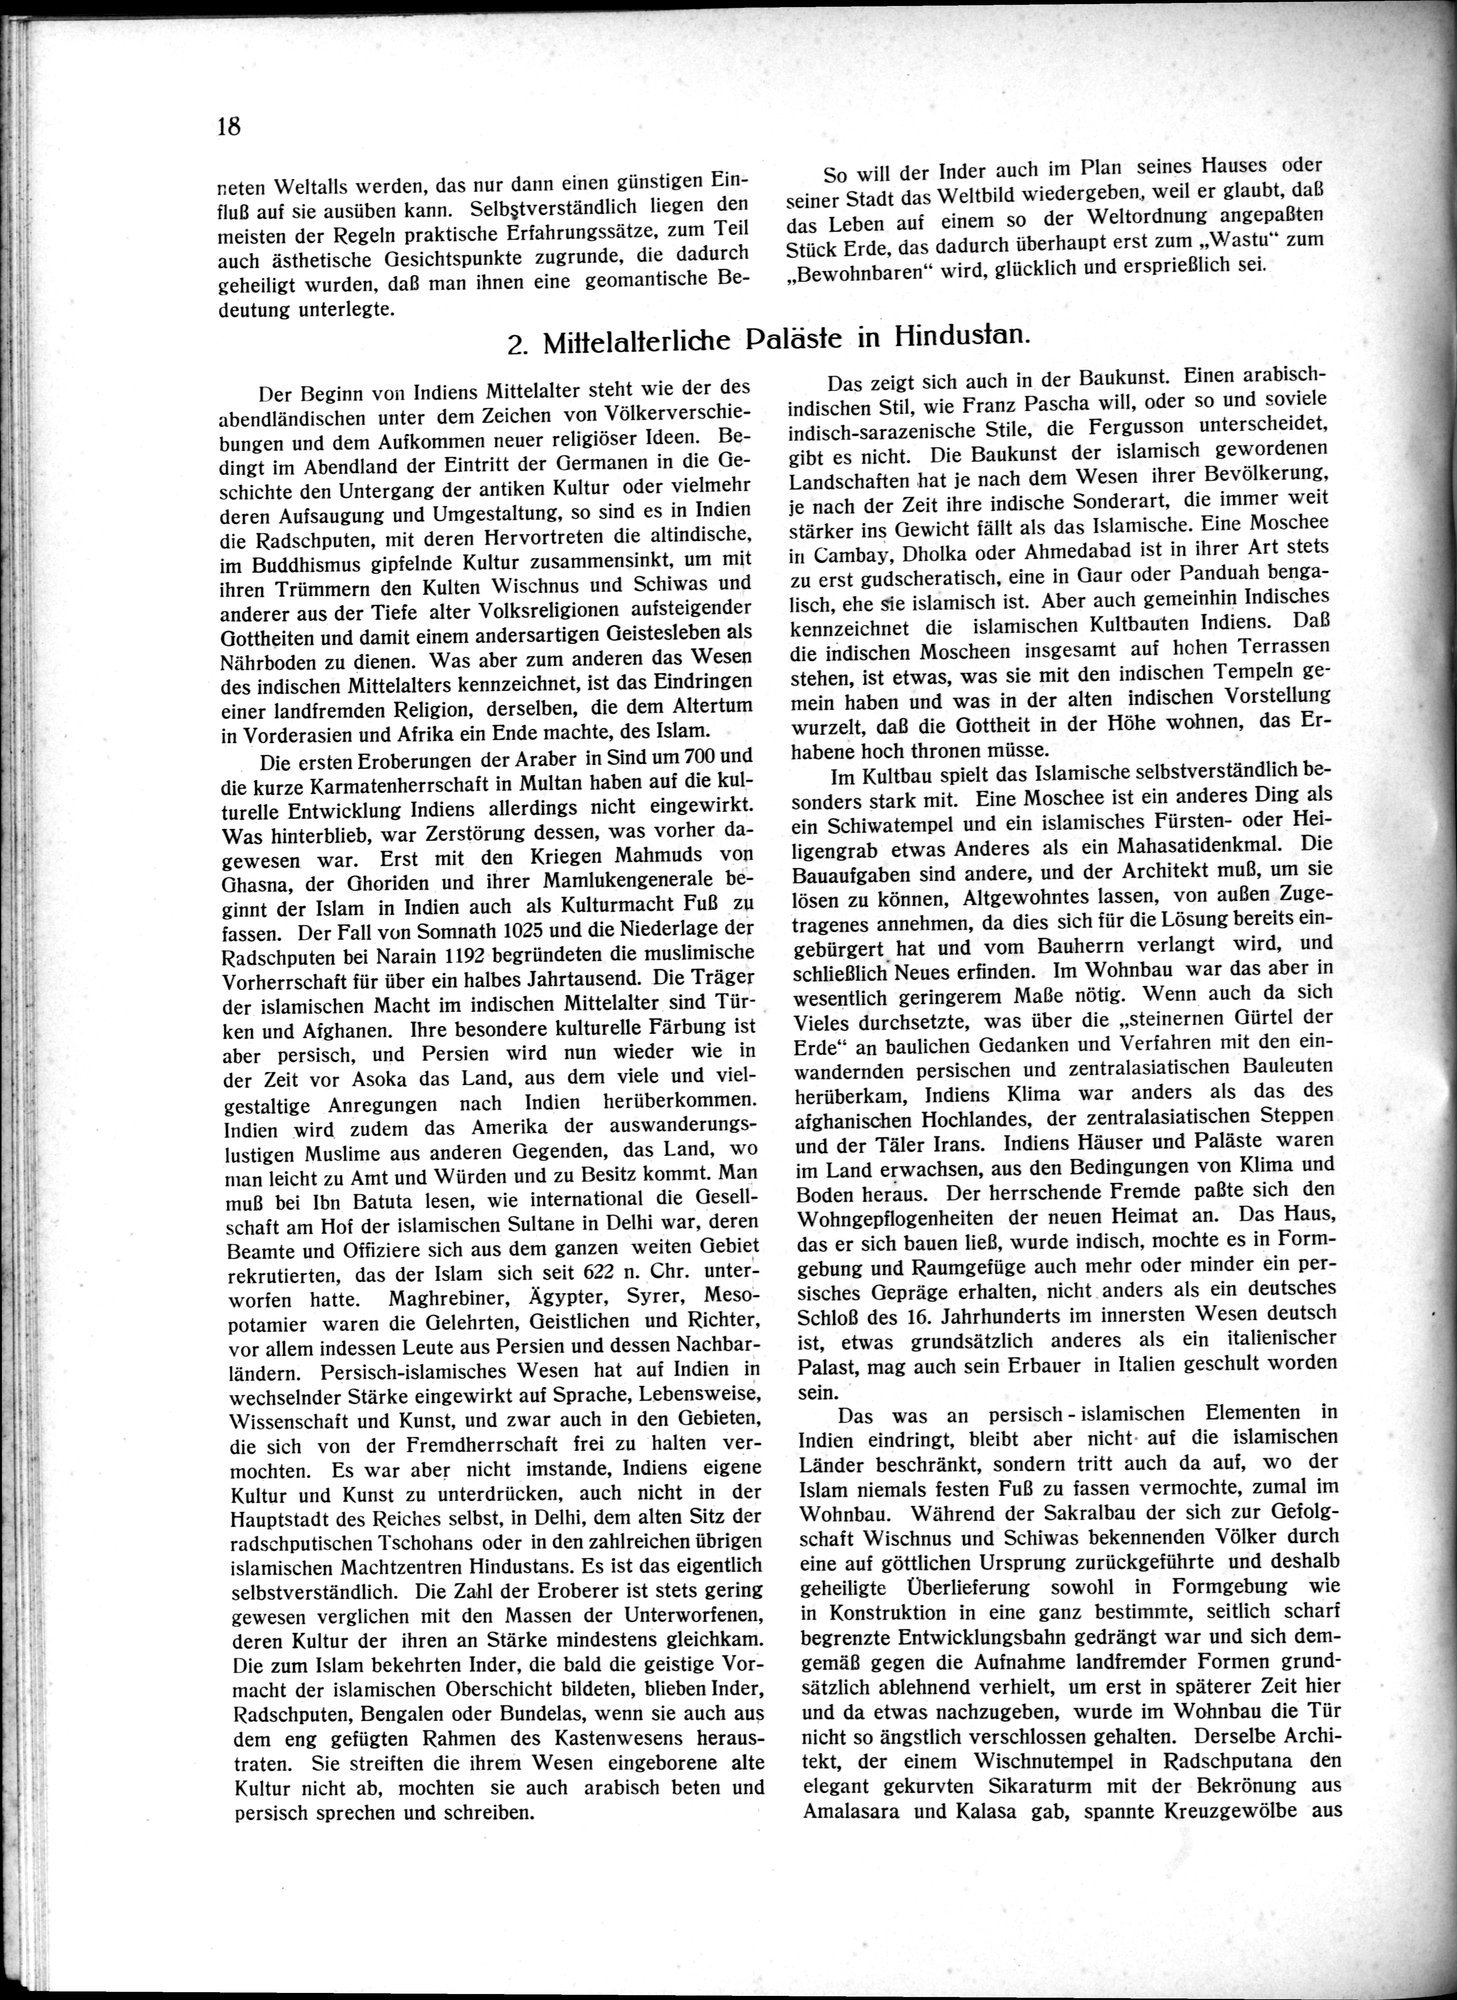 Indische Palaste und Wohnhauser : vol.1 / Page 28 (Grayscale High Resolution Image)